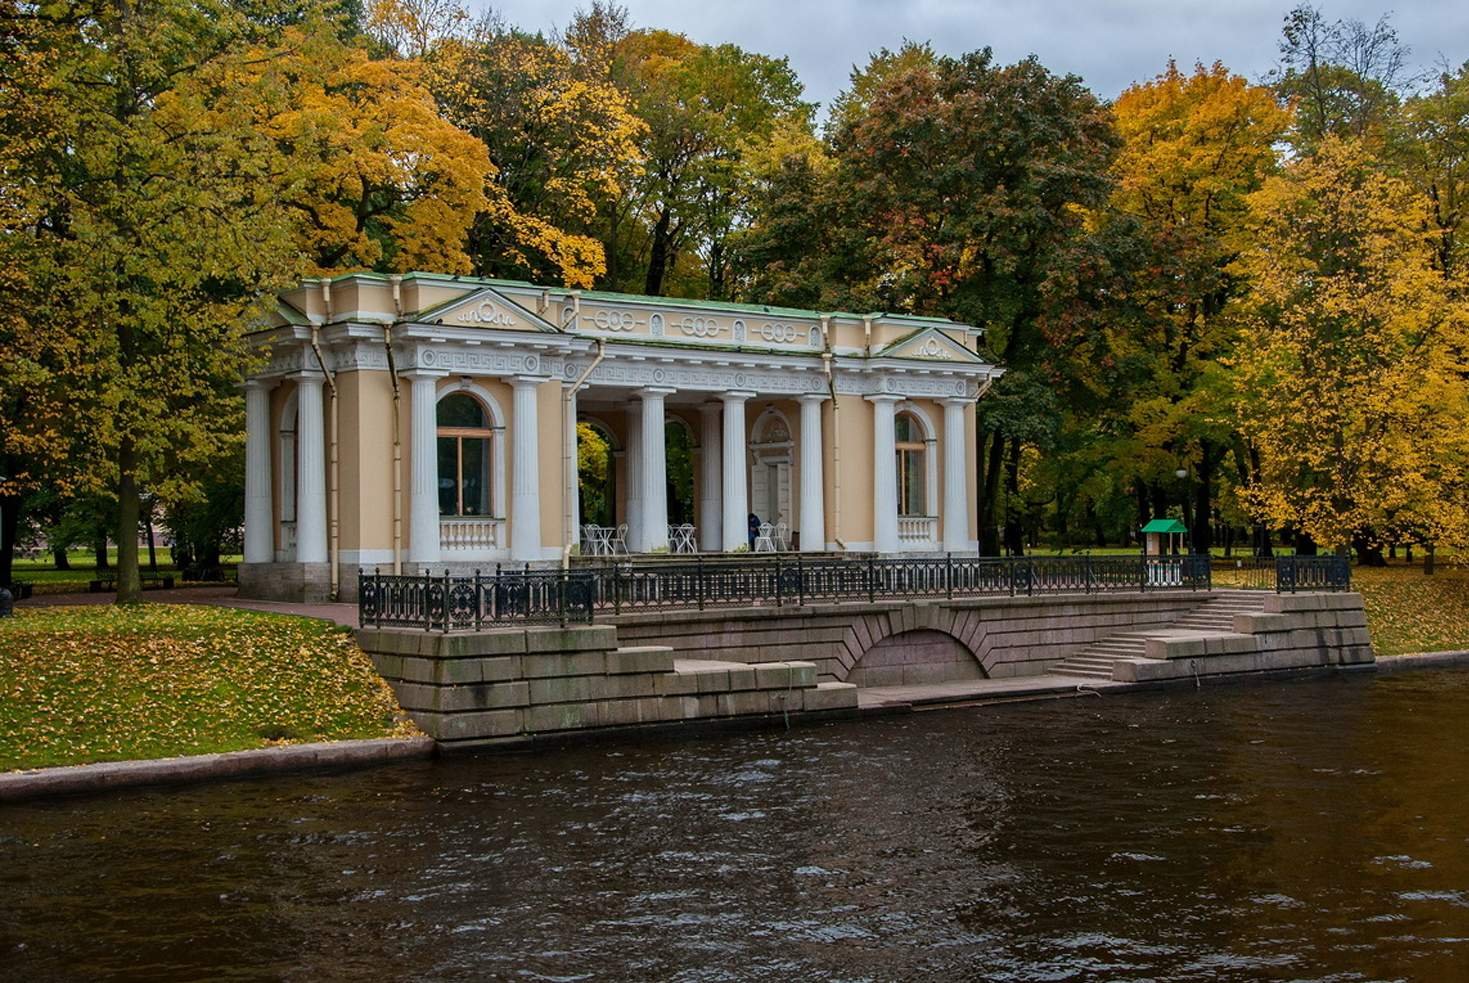 Михайловский парк в Санкт-Петербурге